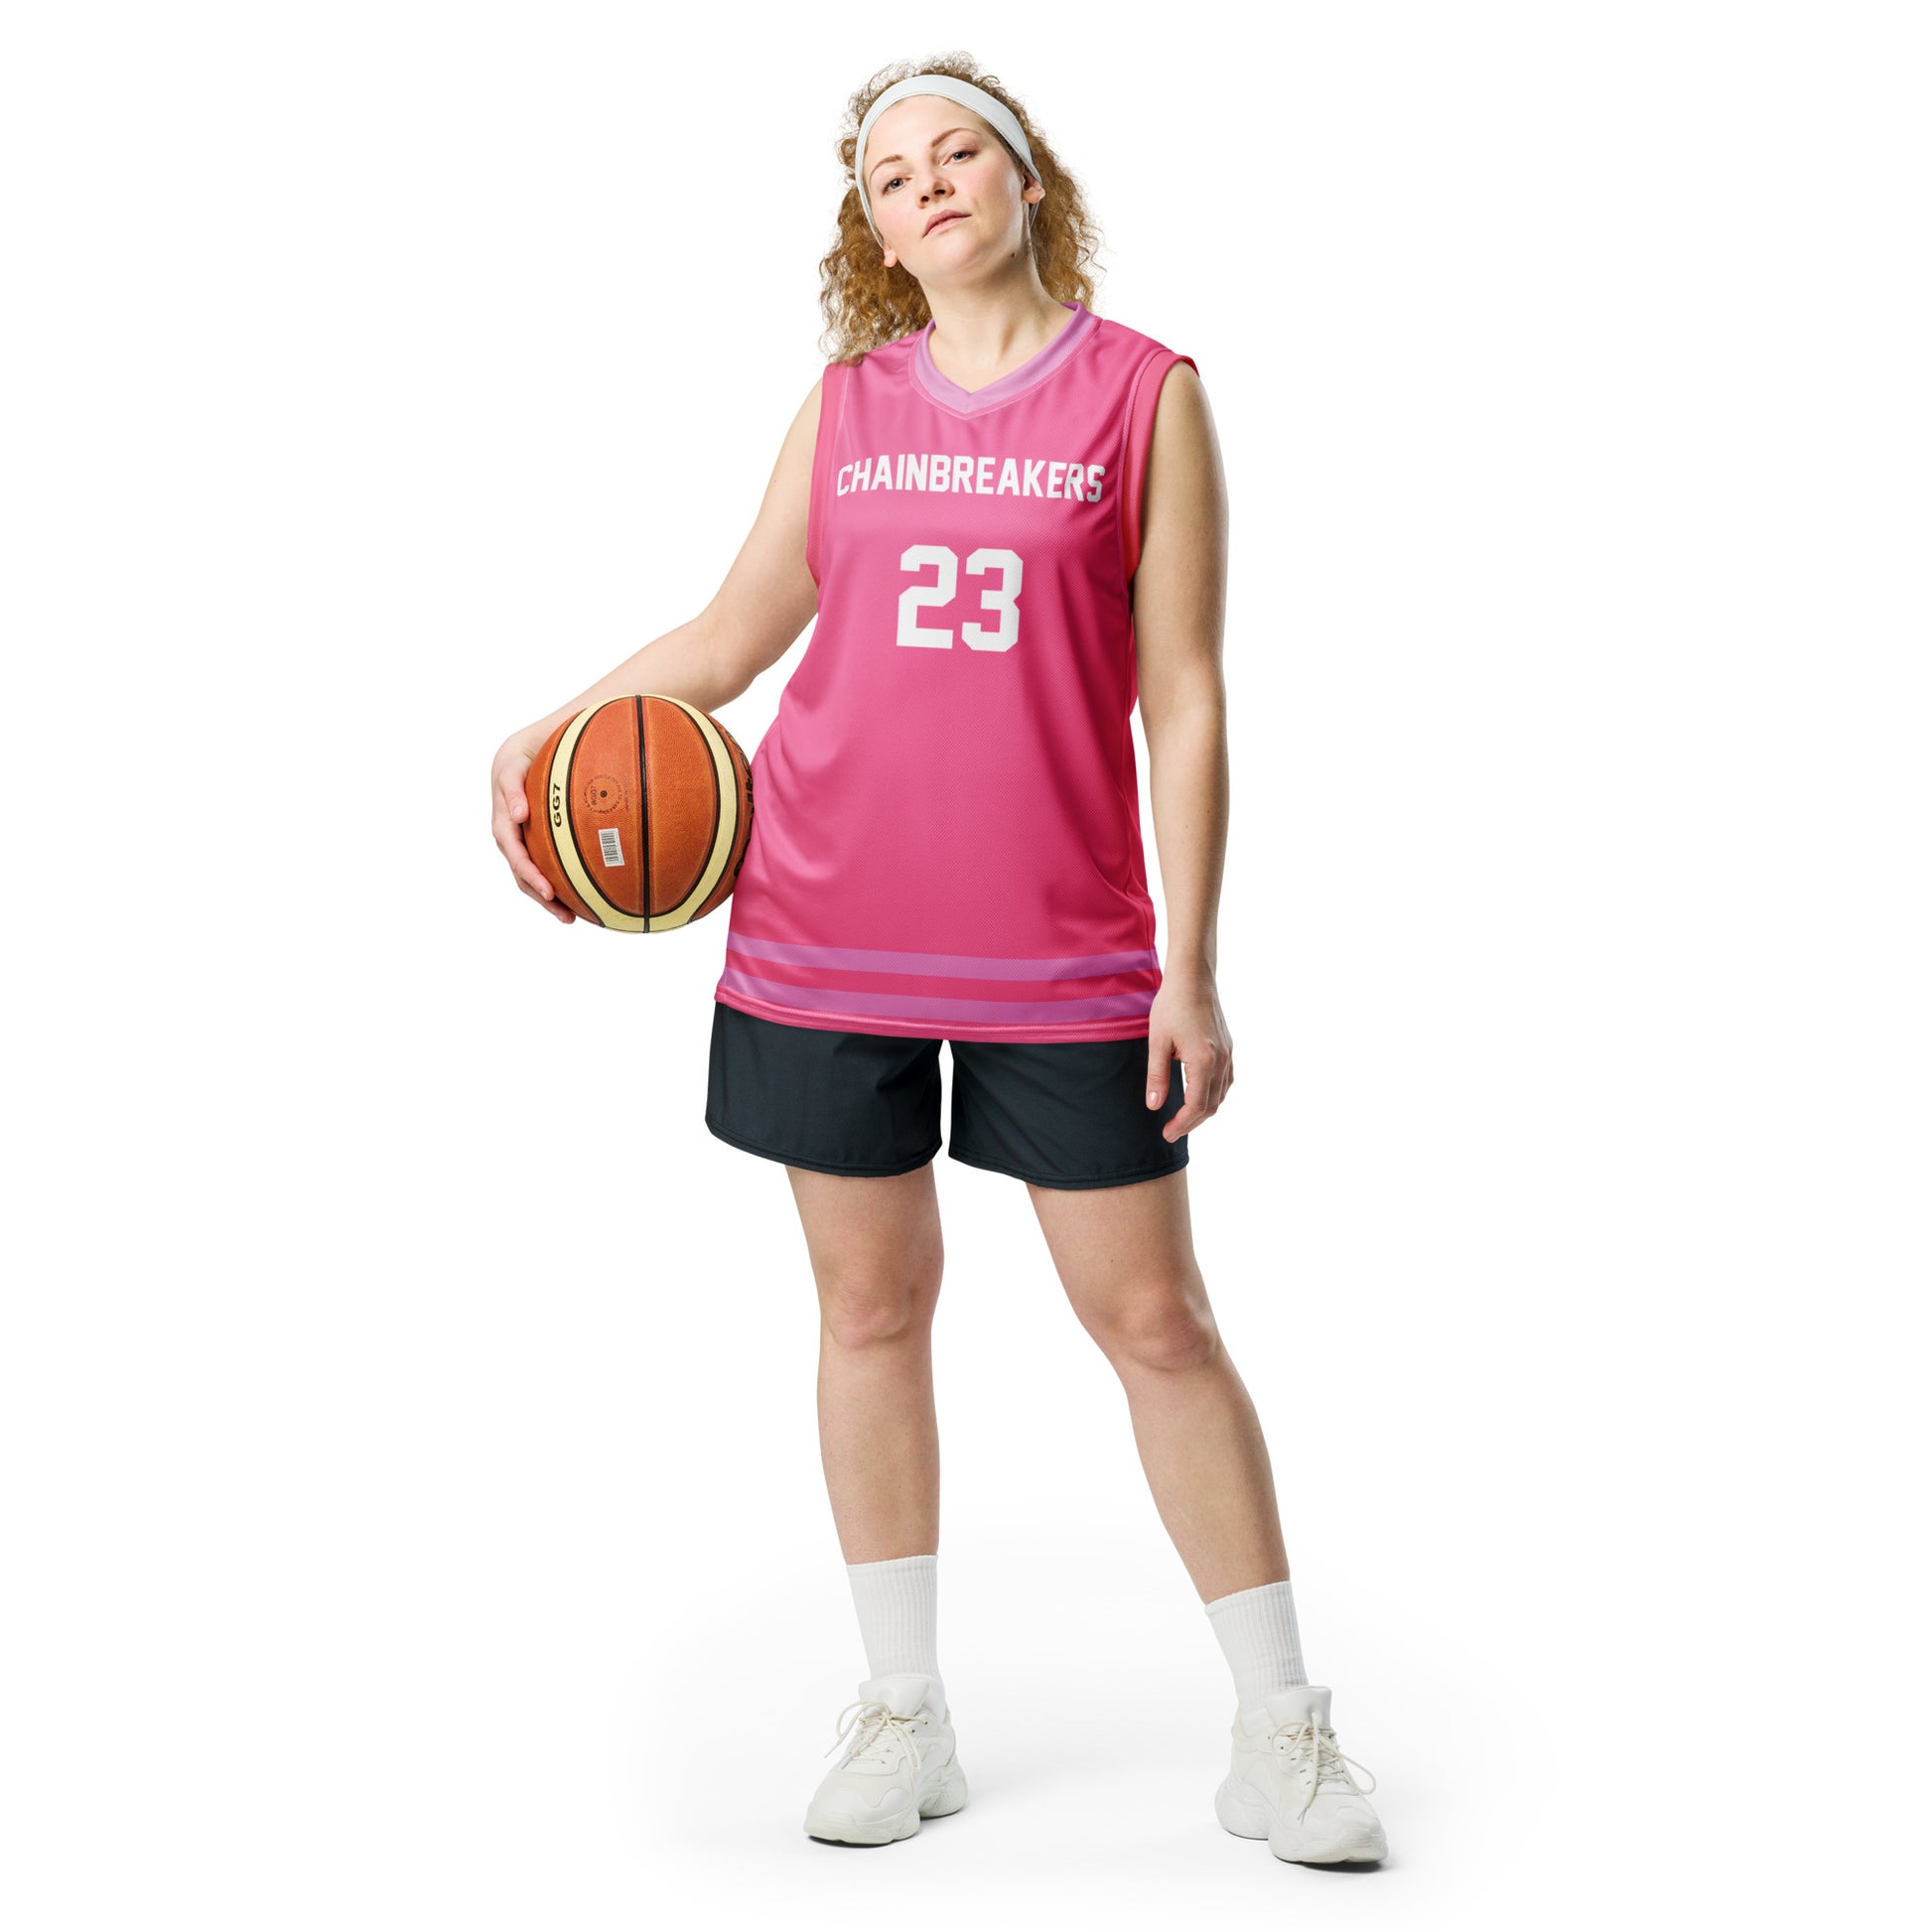 pink jersey basketball